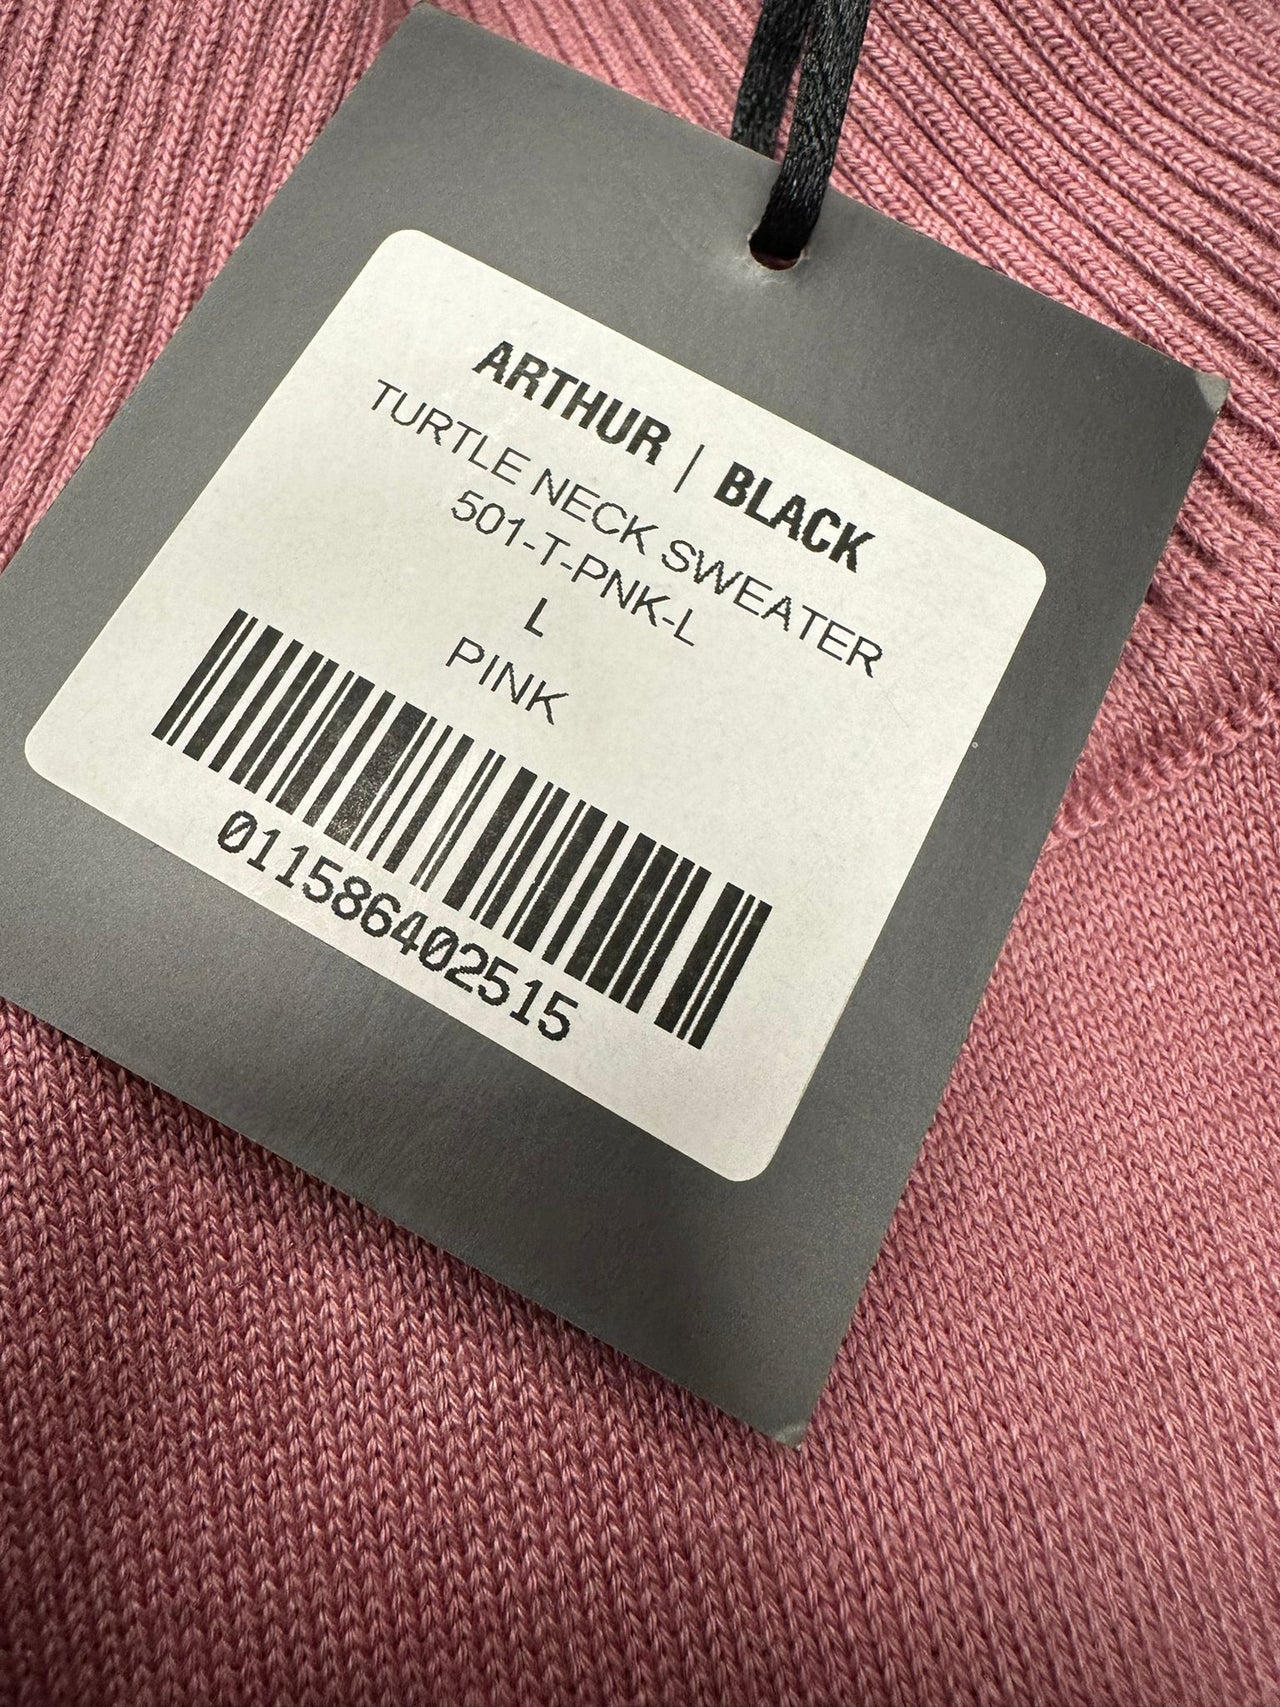 Arthur Black Men's Solid Pink Pullover Cotton Blend Turtleneck Sweater Shirt